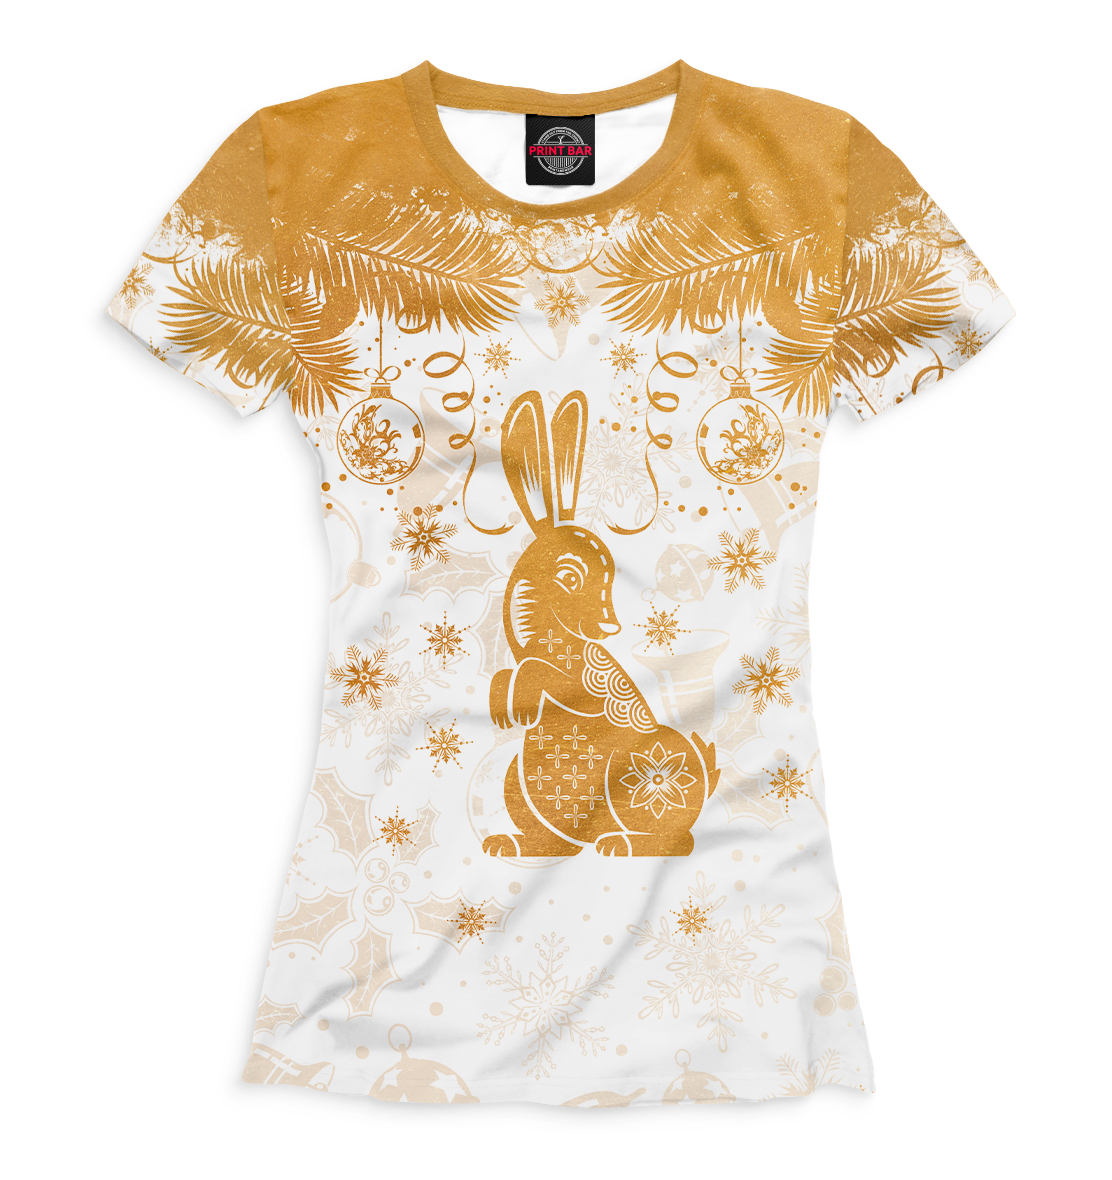 Футболка Золотой кролик для девочек, артикул: YOT-186992-fut-1mp